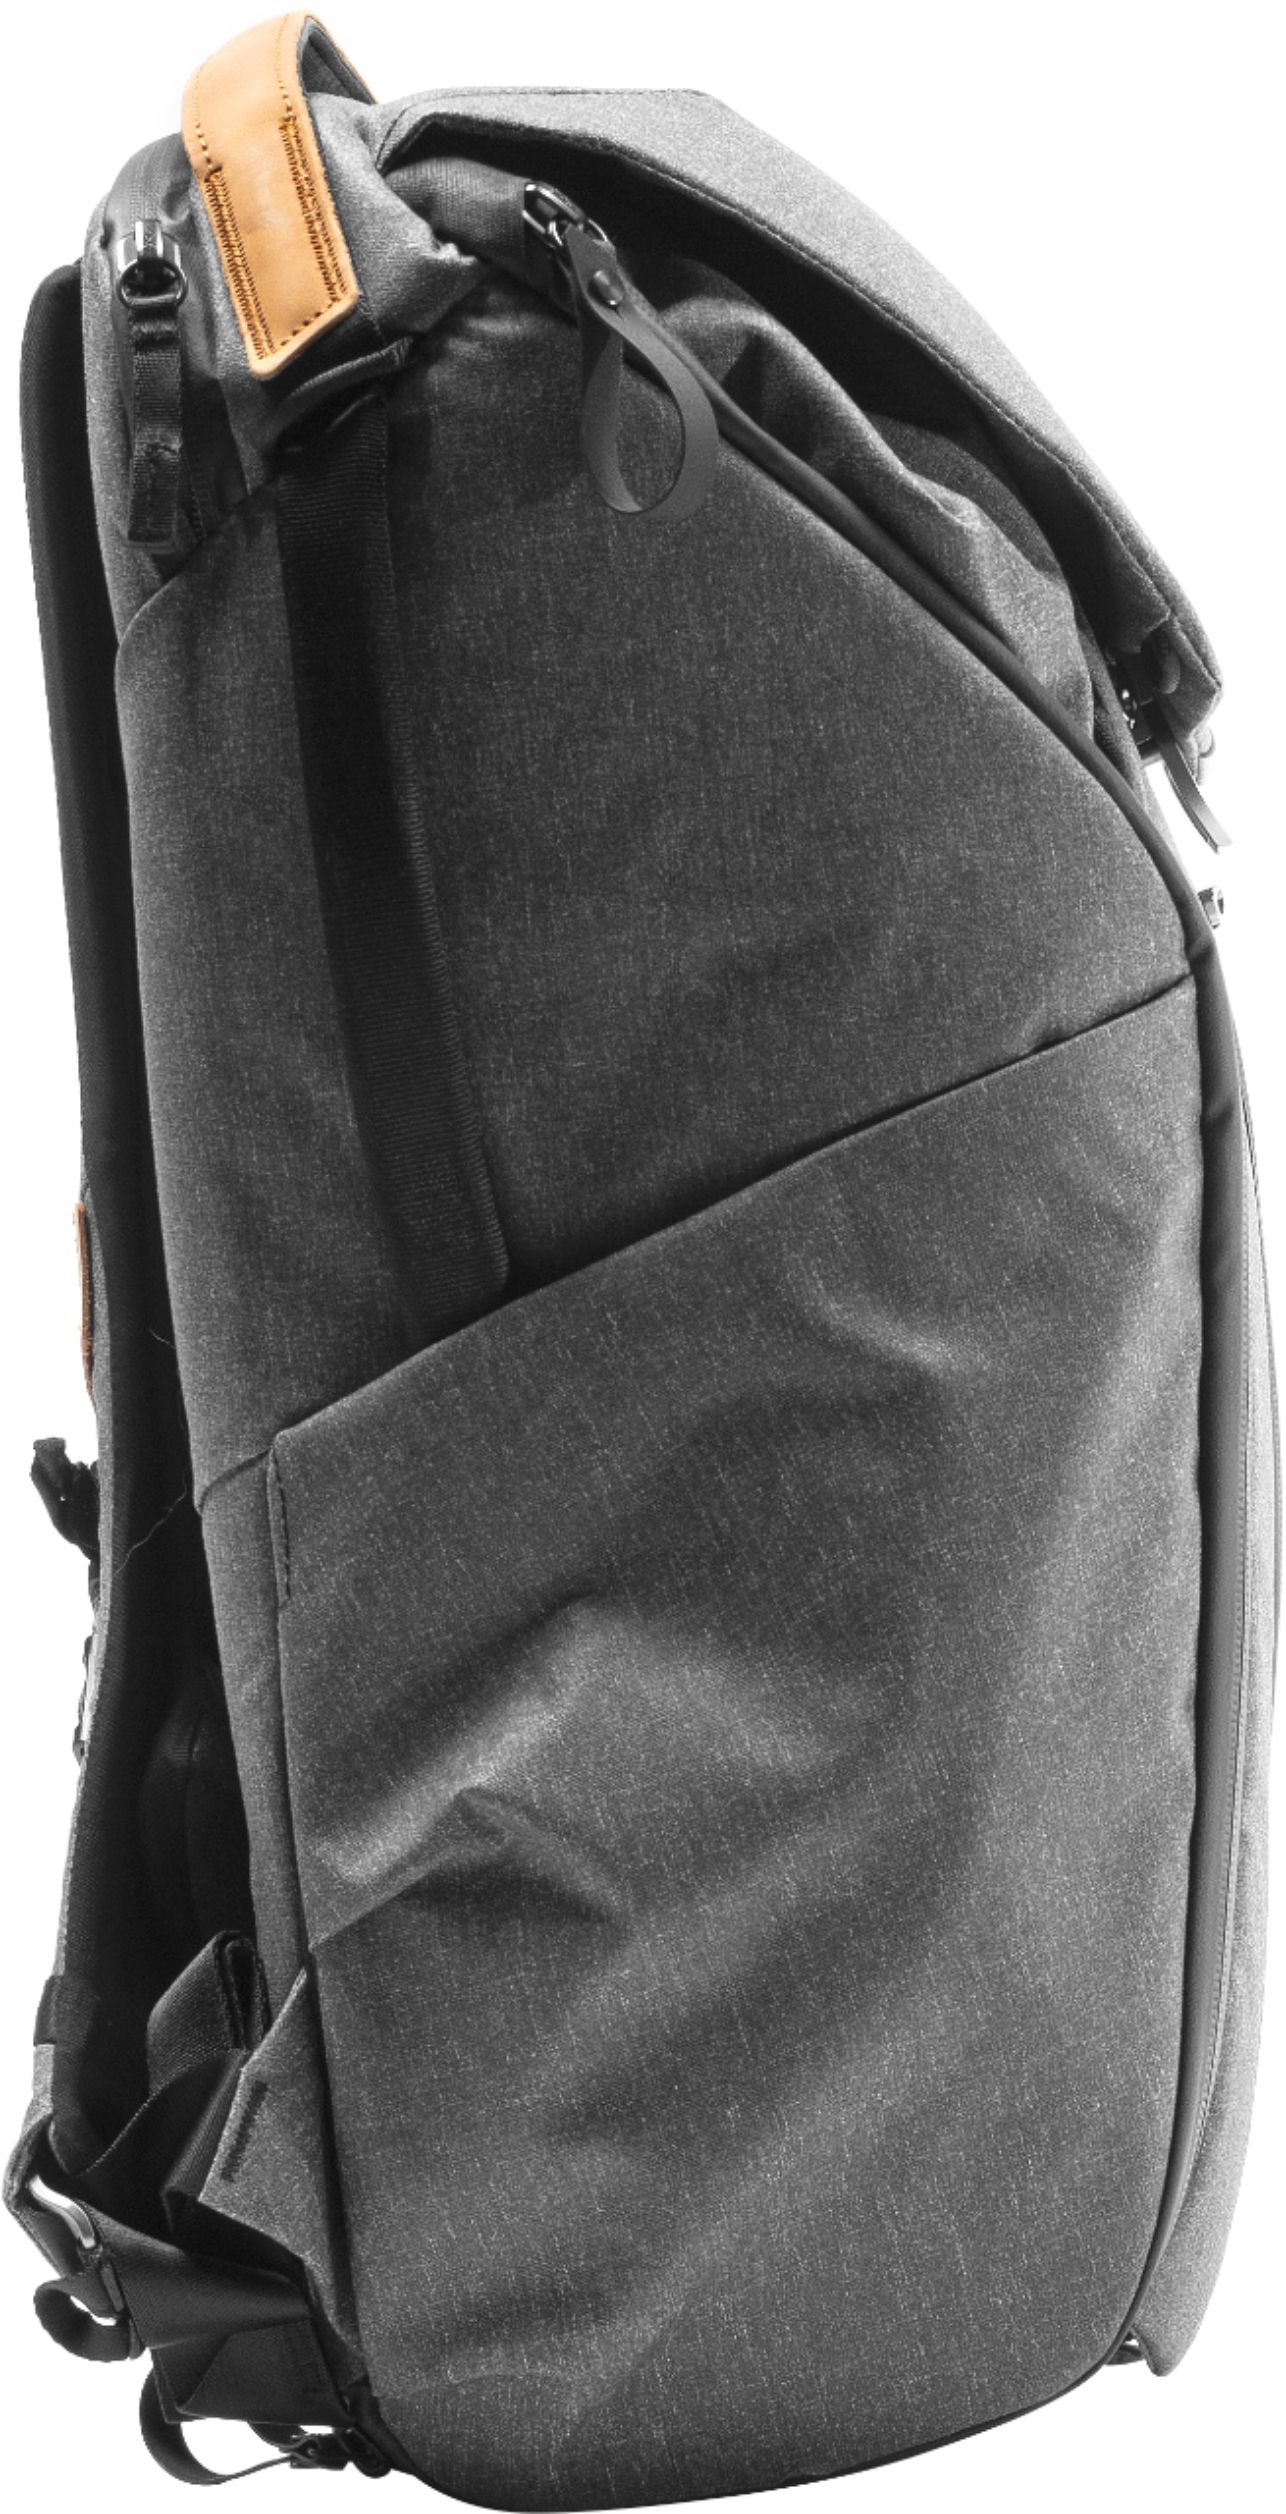 Peak Design Everyday Backpack V2 30L Charcoal BEDB30CH2 Best Buy